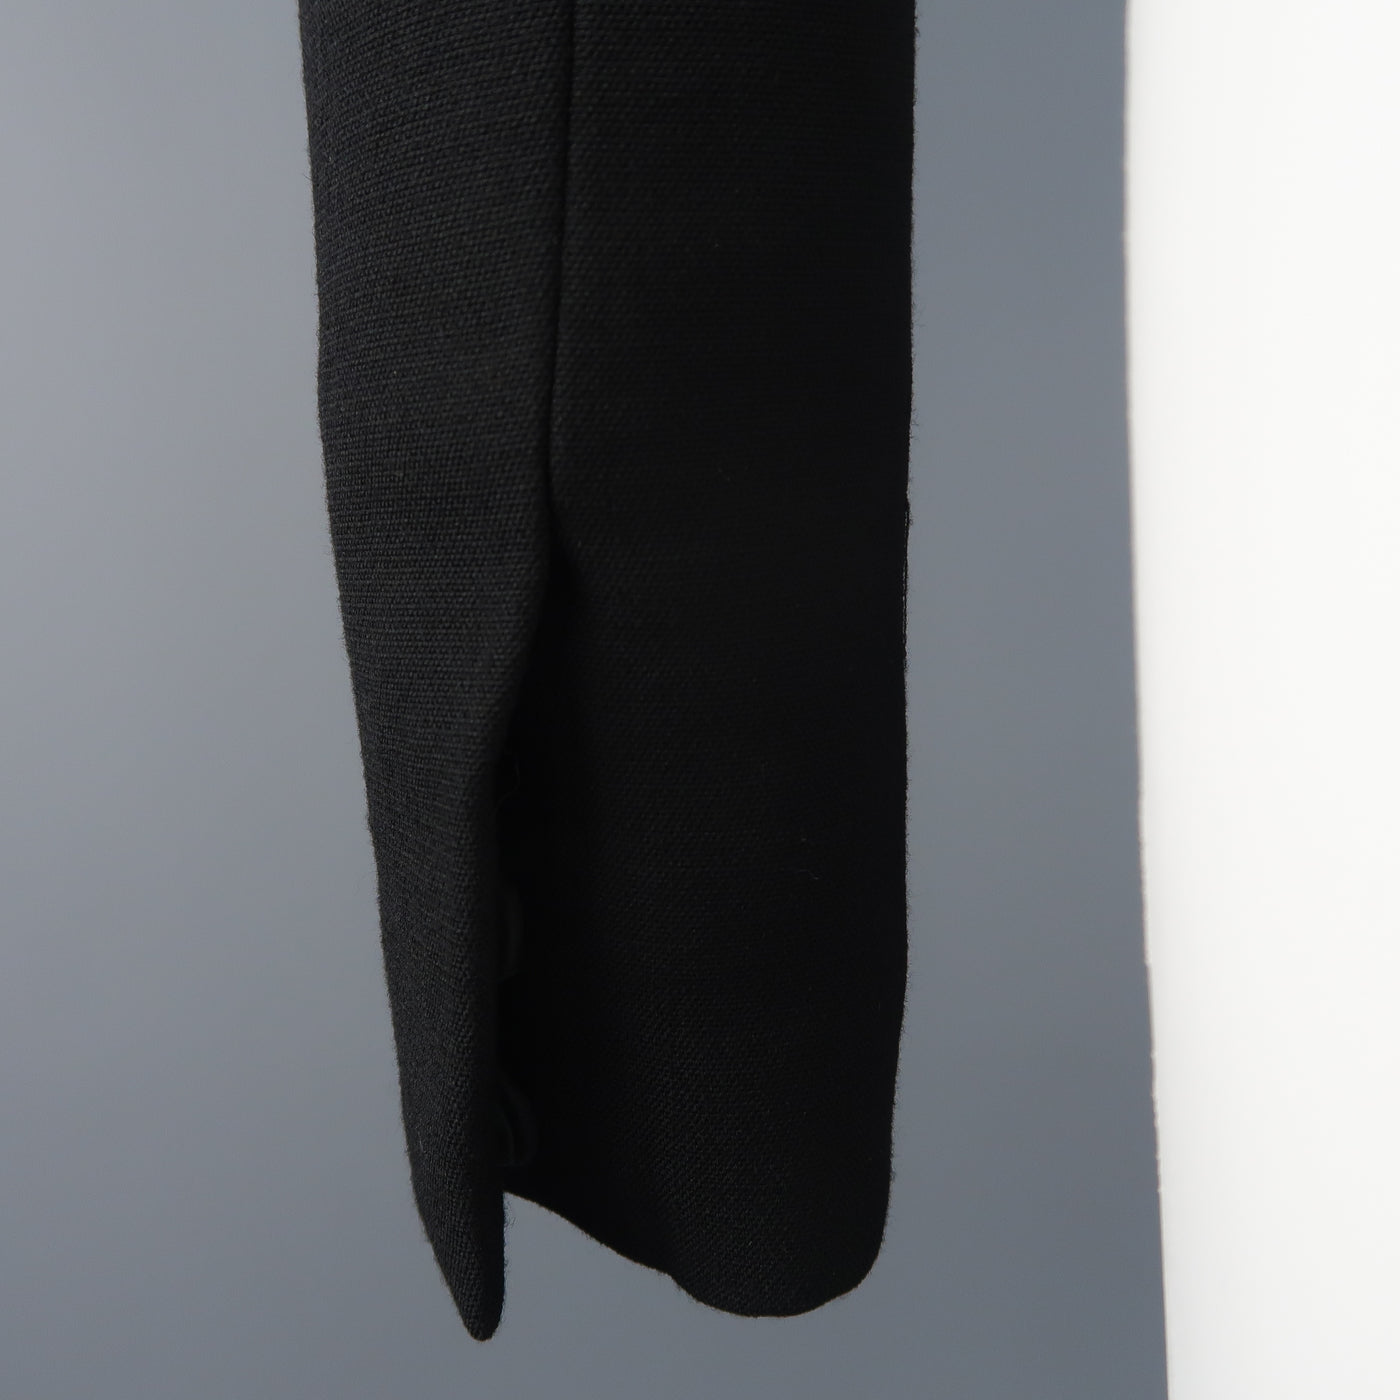 HELMUT LANG Size S Black Wool Blend Vest Overlay Jacket